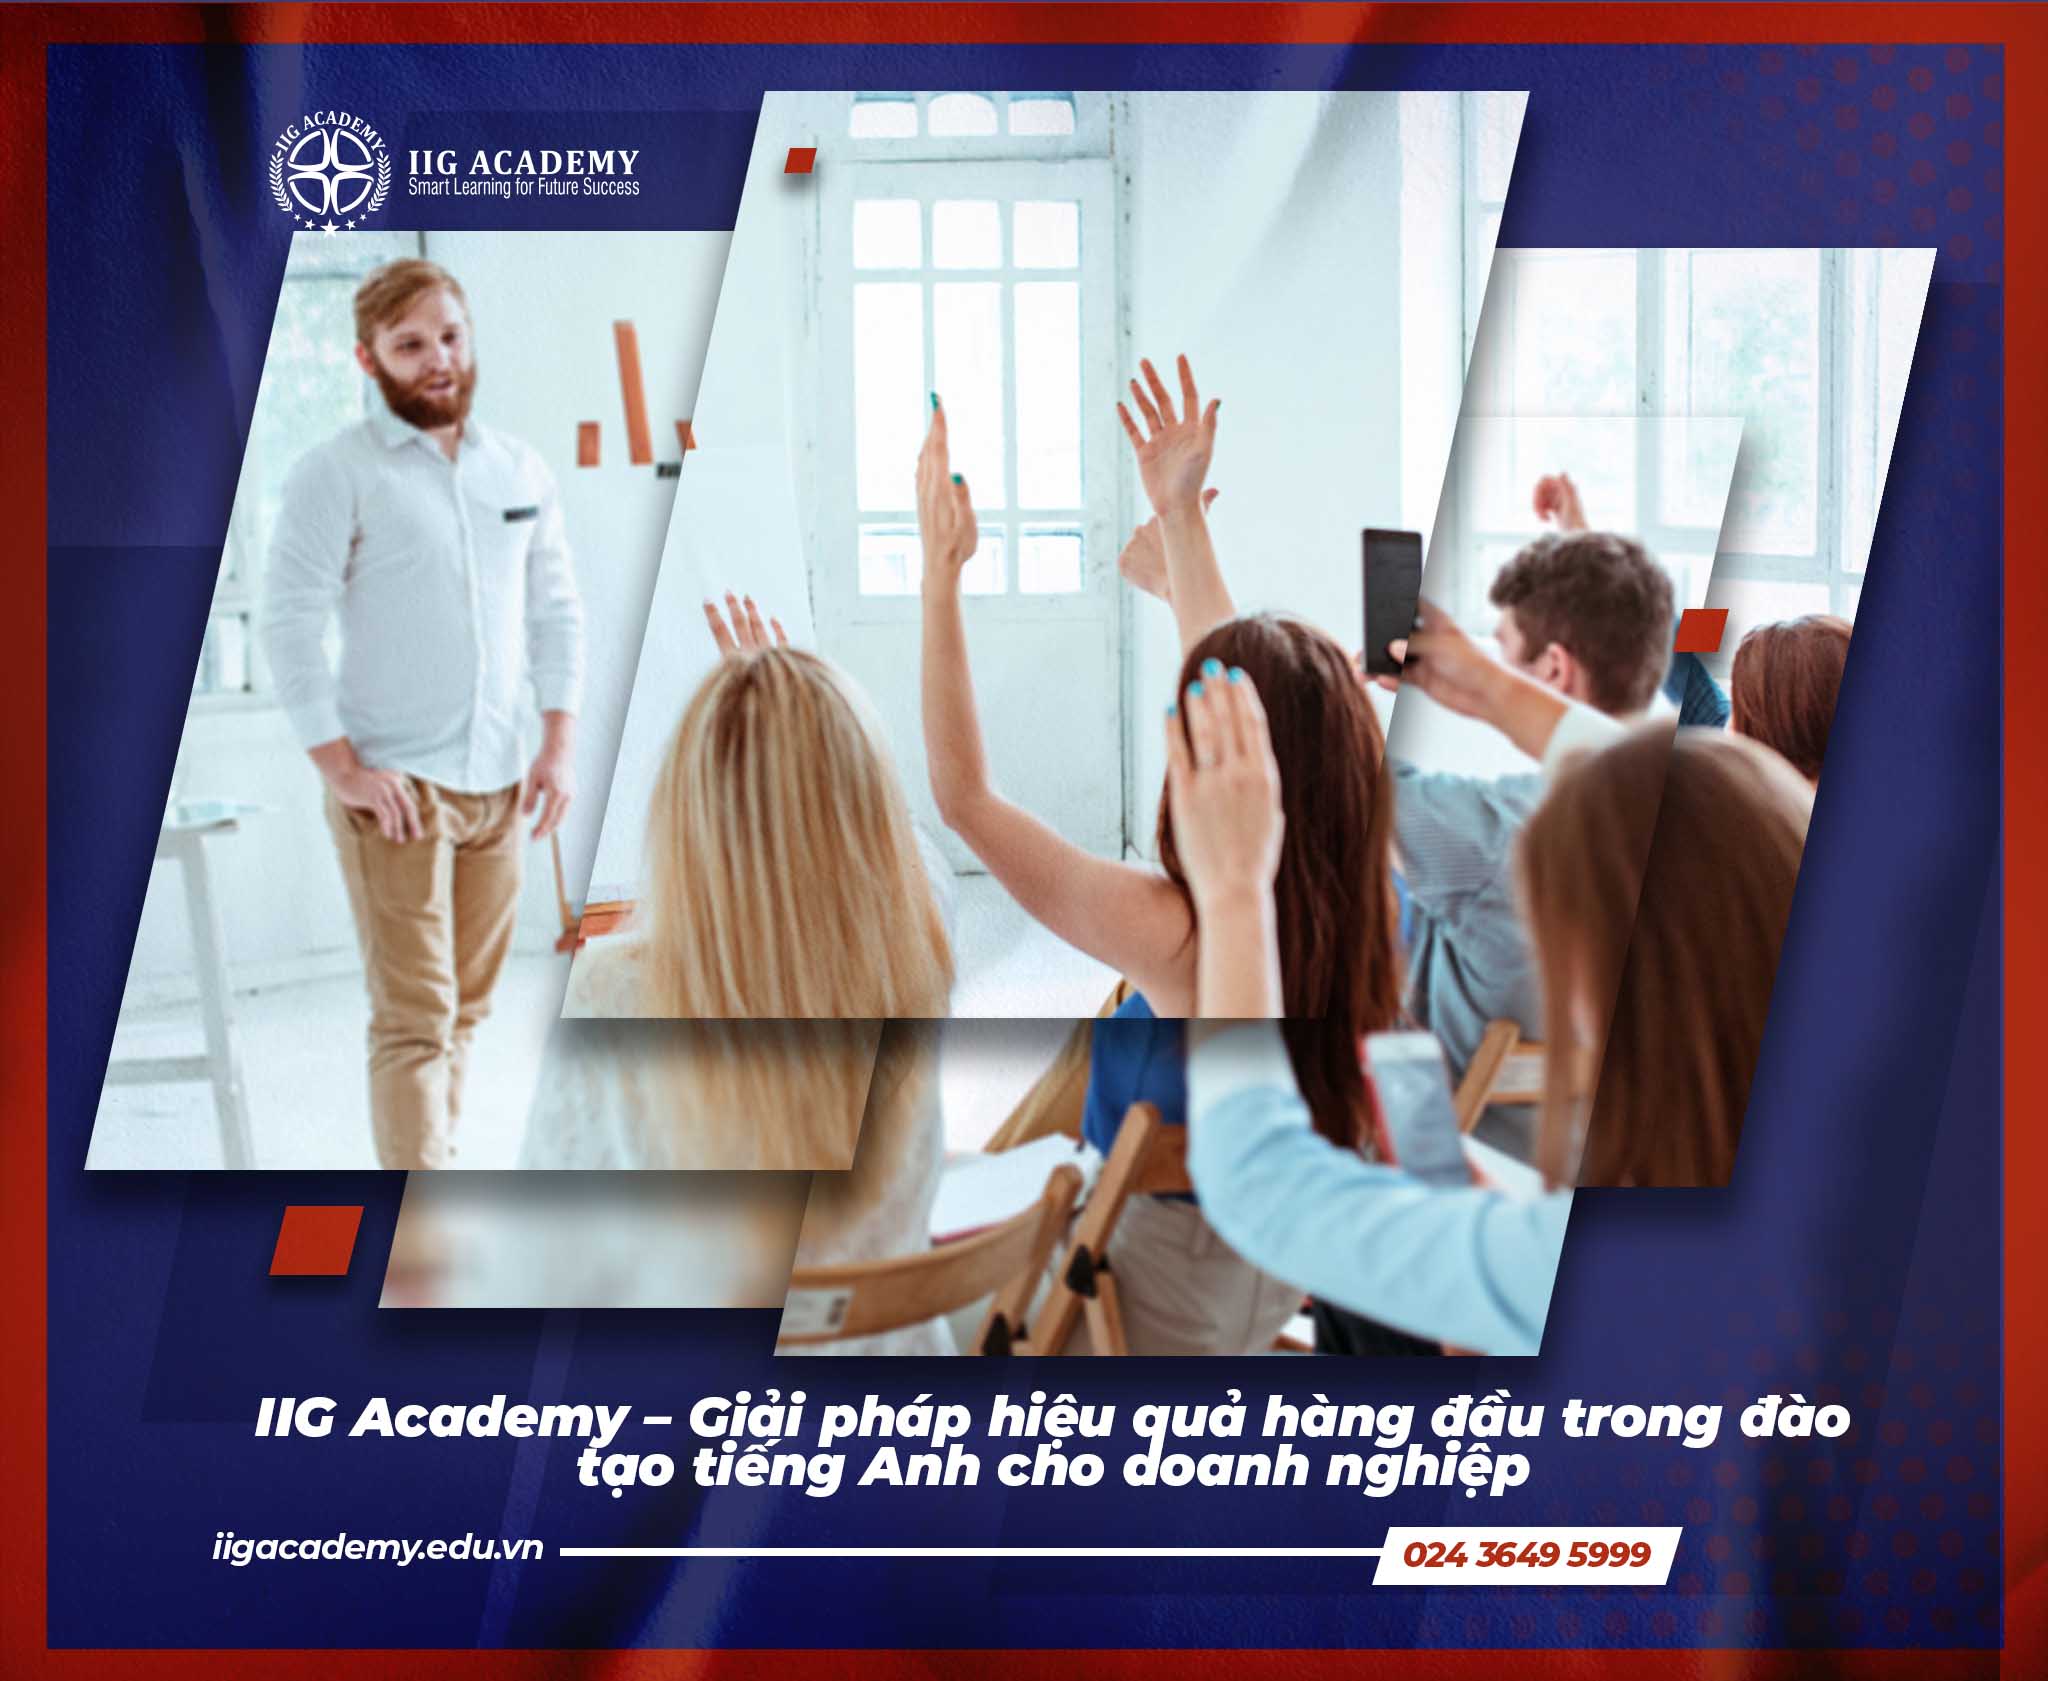 IIG Academy – Giải pháp hiệu quả hàng đầu trong đào tạo tiếng Anh cho doanh nghiệp